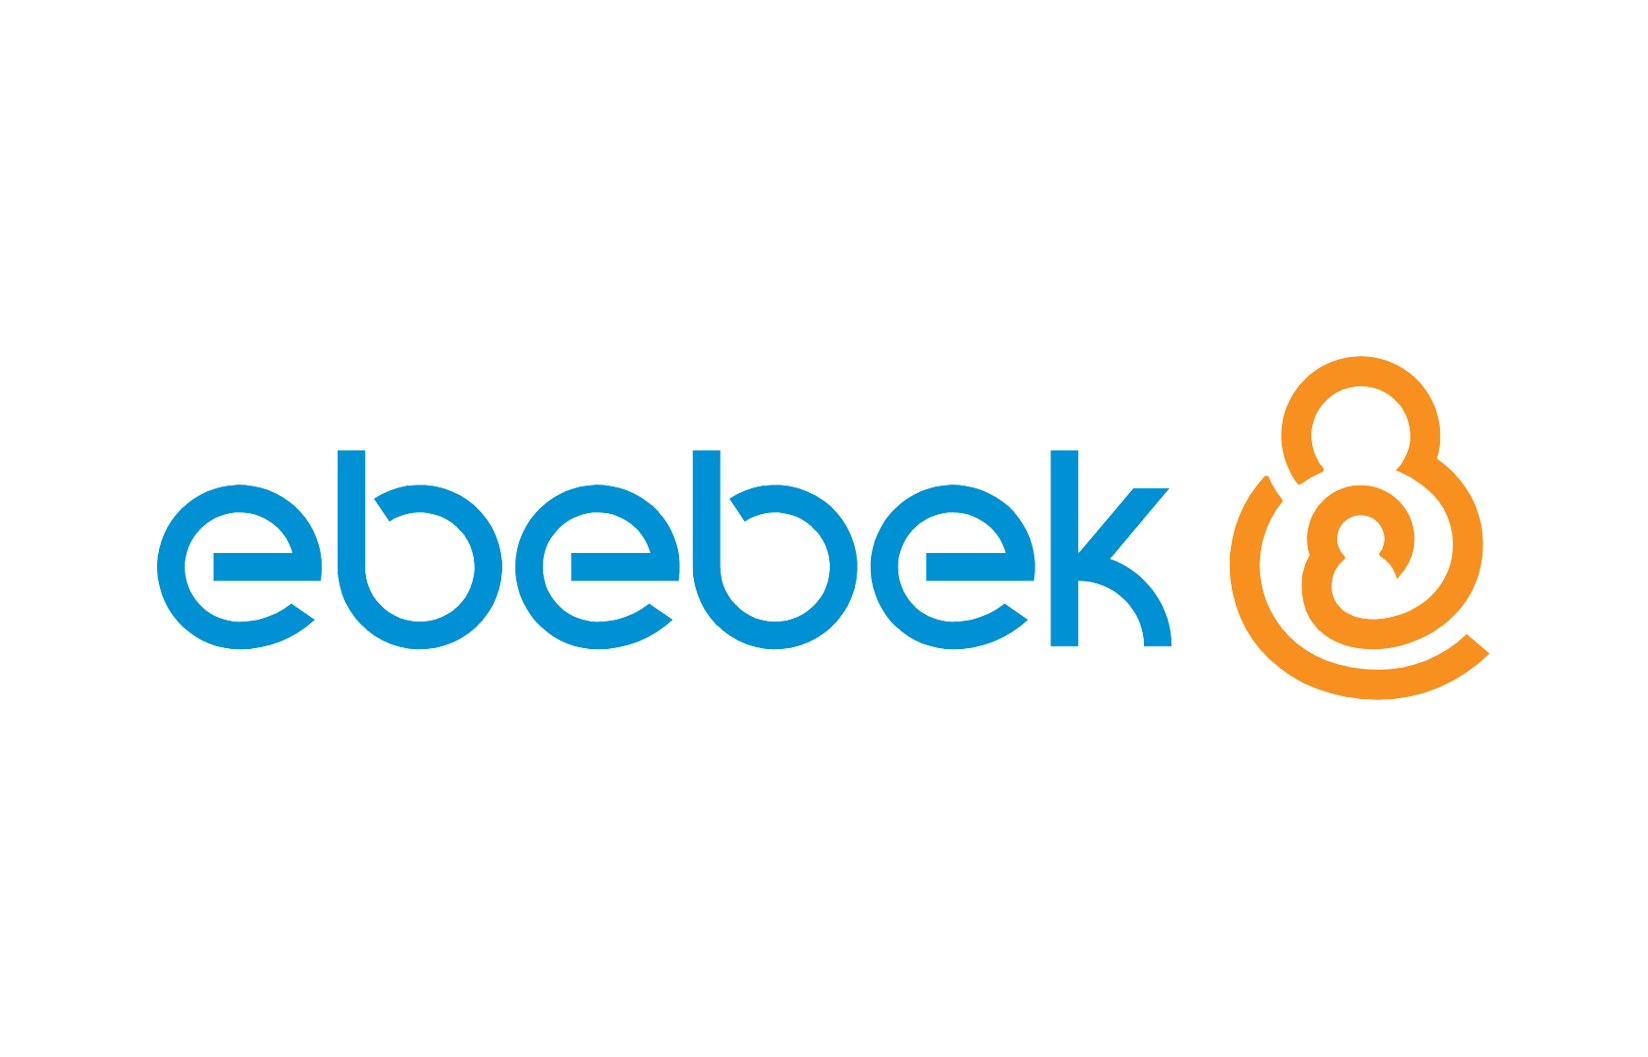 Ebebek